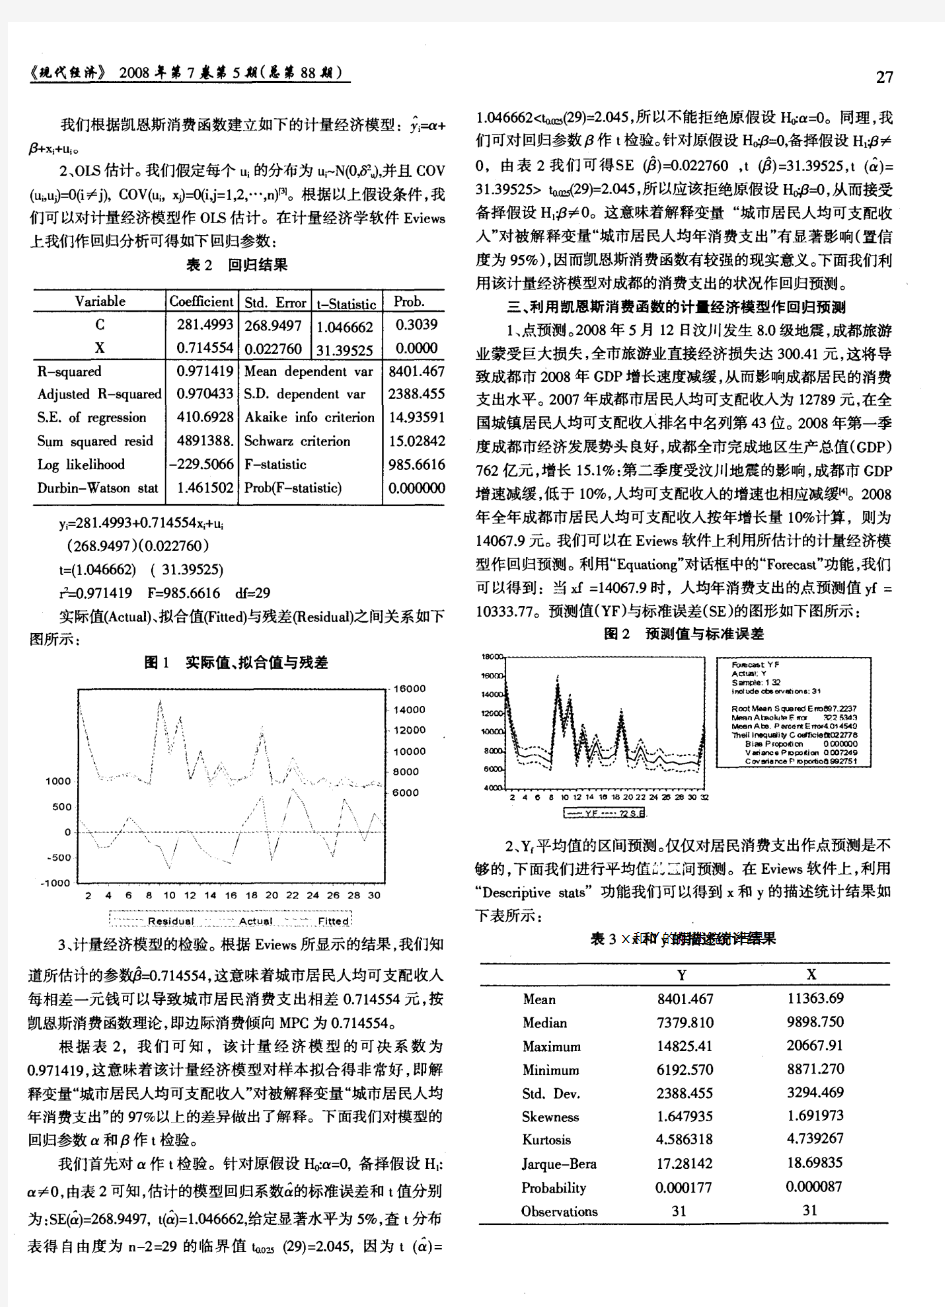 对凯恩斯消费函数的实证分析——以中国城市居民消费支出为例